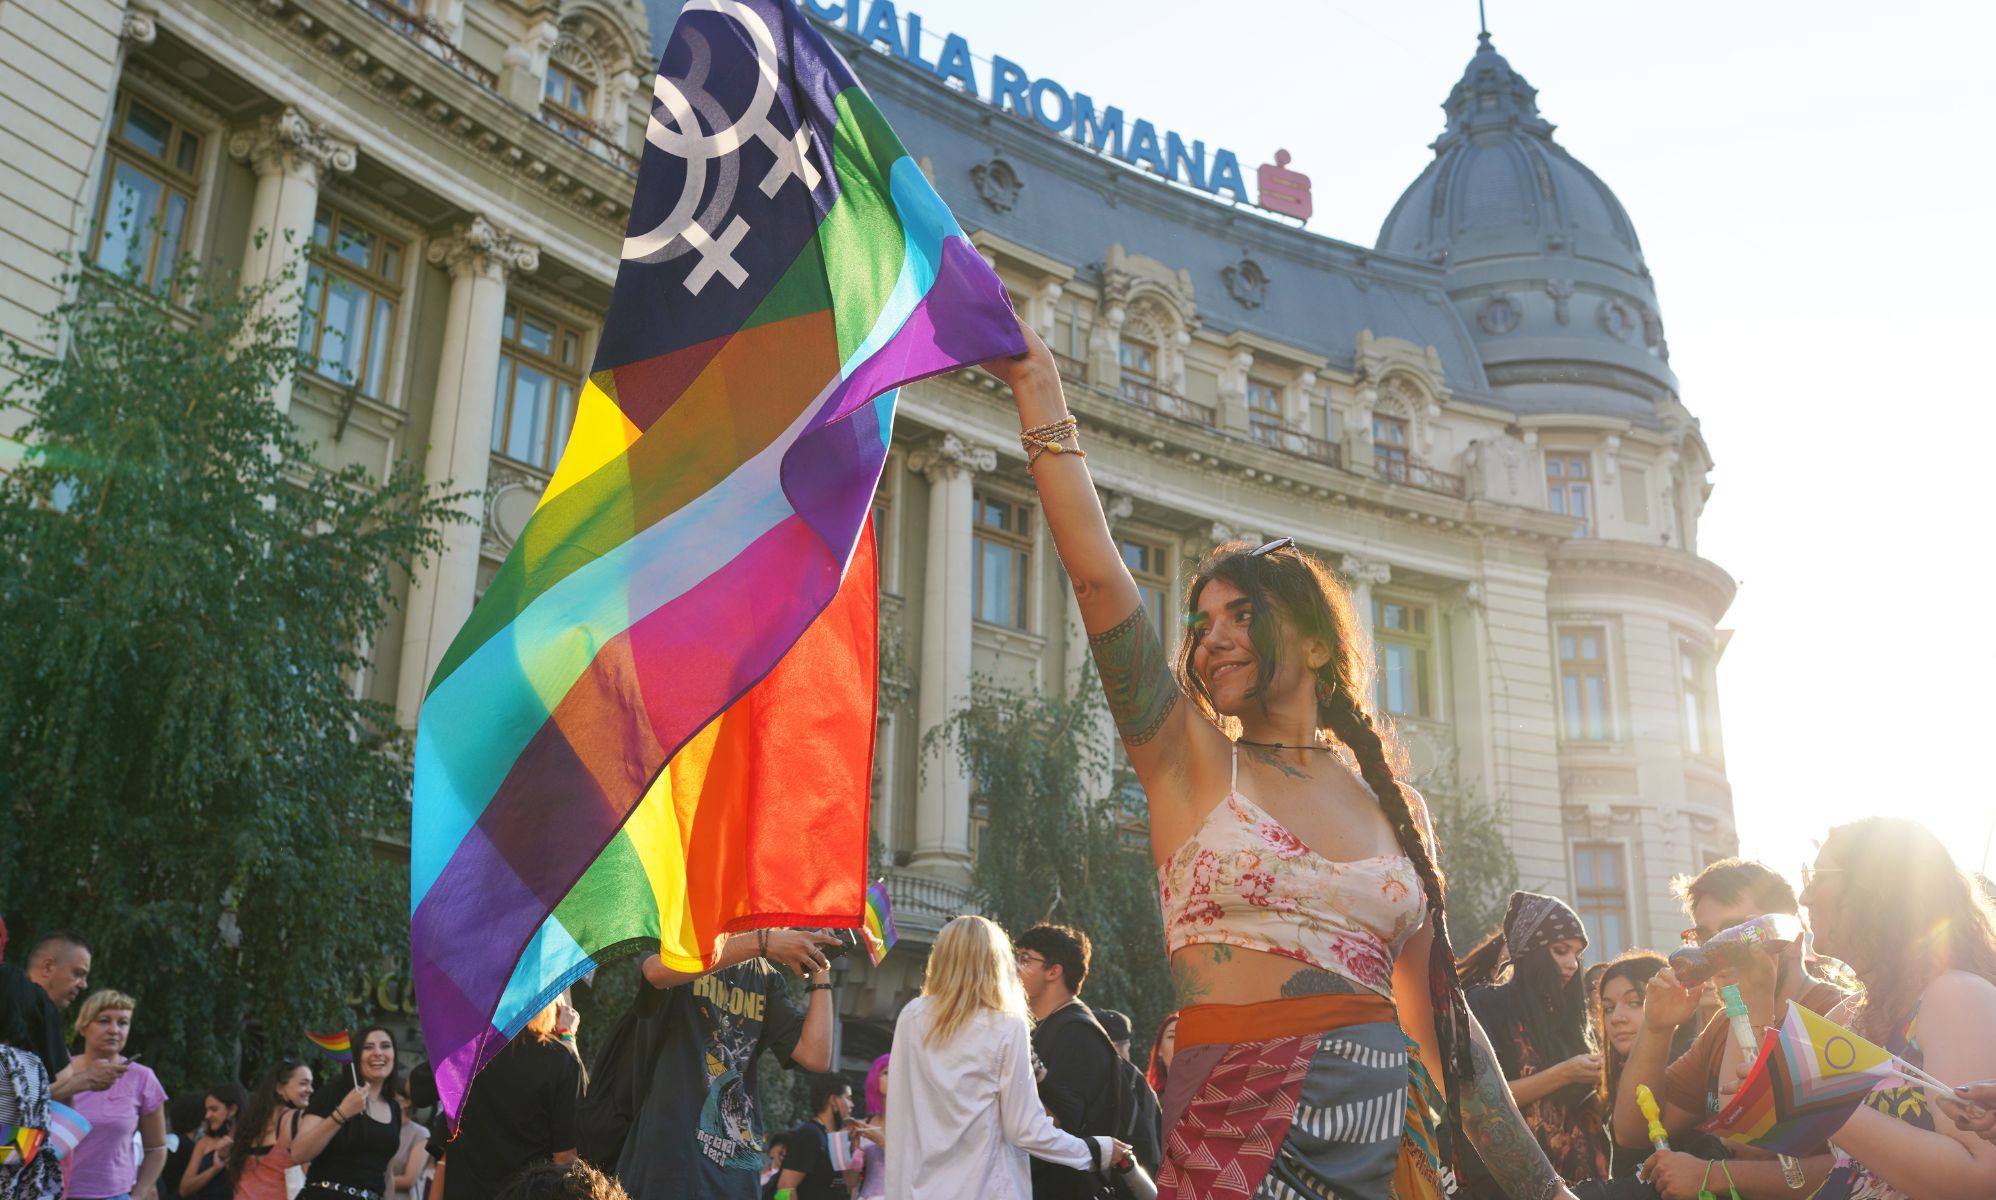 Rumanía "no está preparada" para más derechos LGBTQ+, dice el Primer Ministro